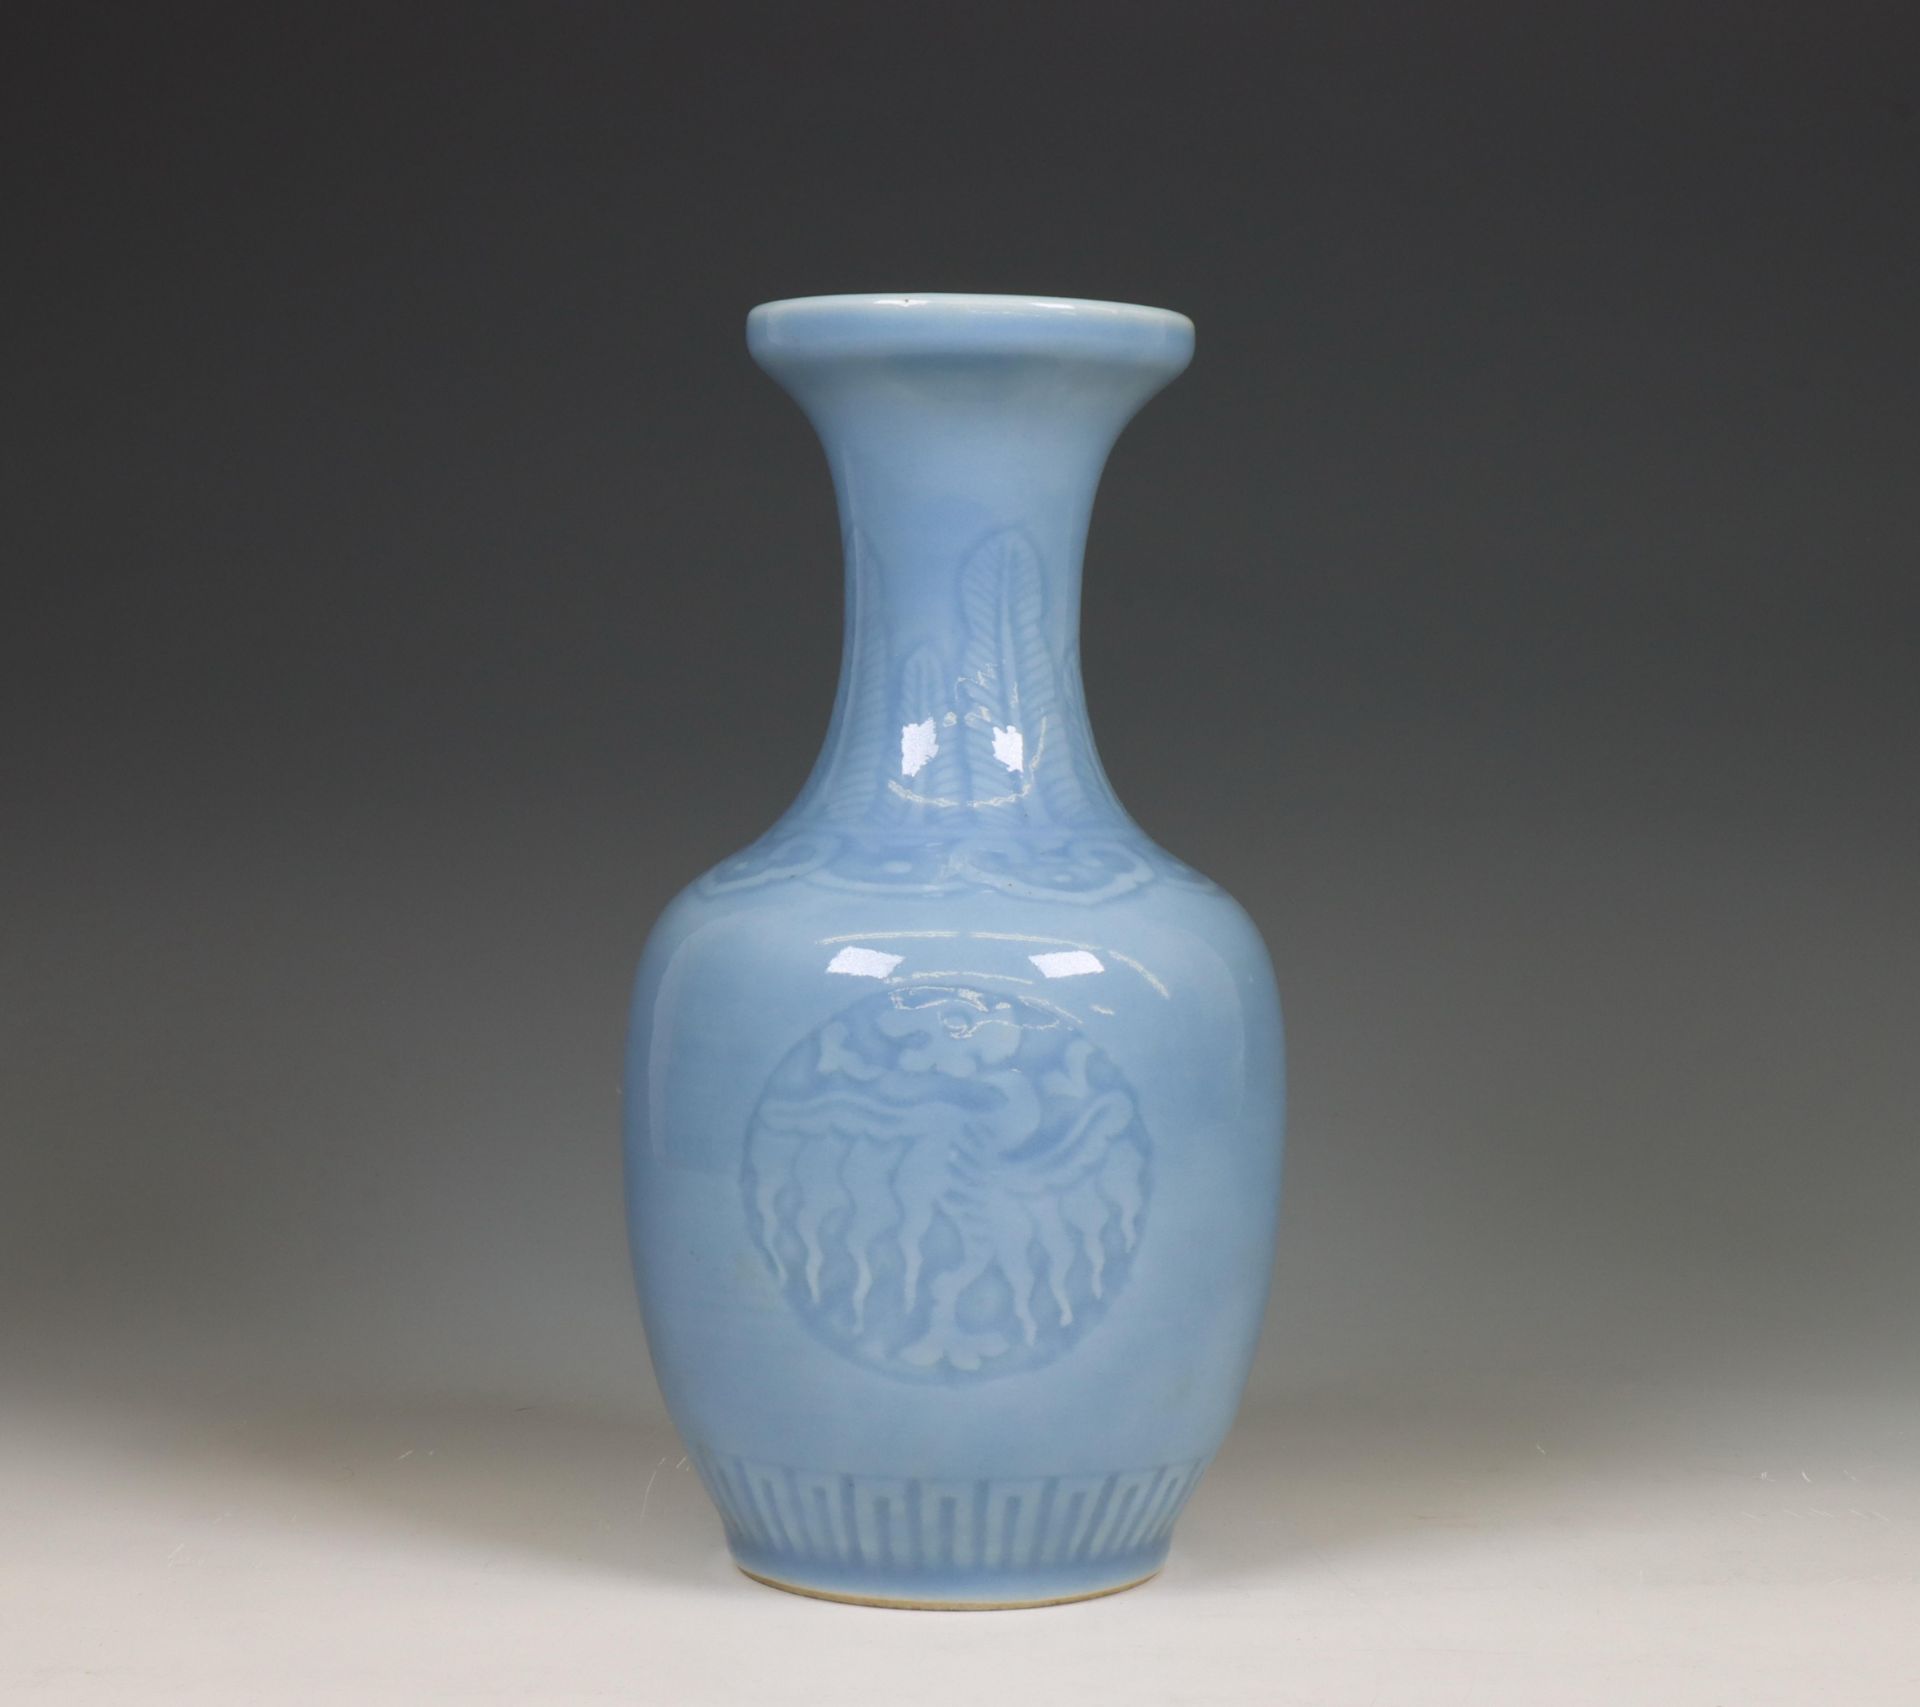 China, a claire-de-lune-glazed bottle vase, 20th century,